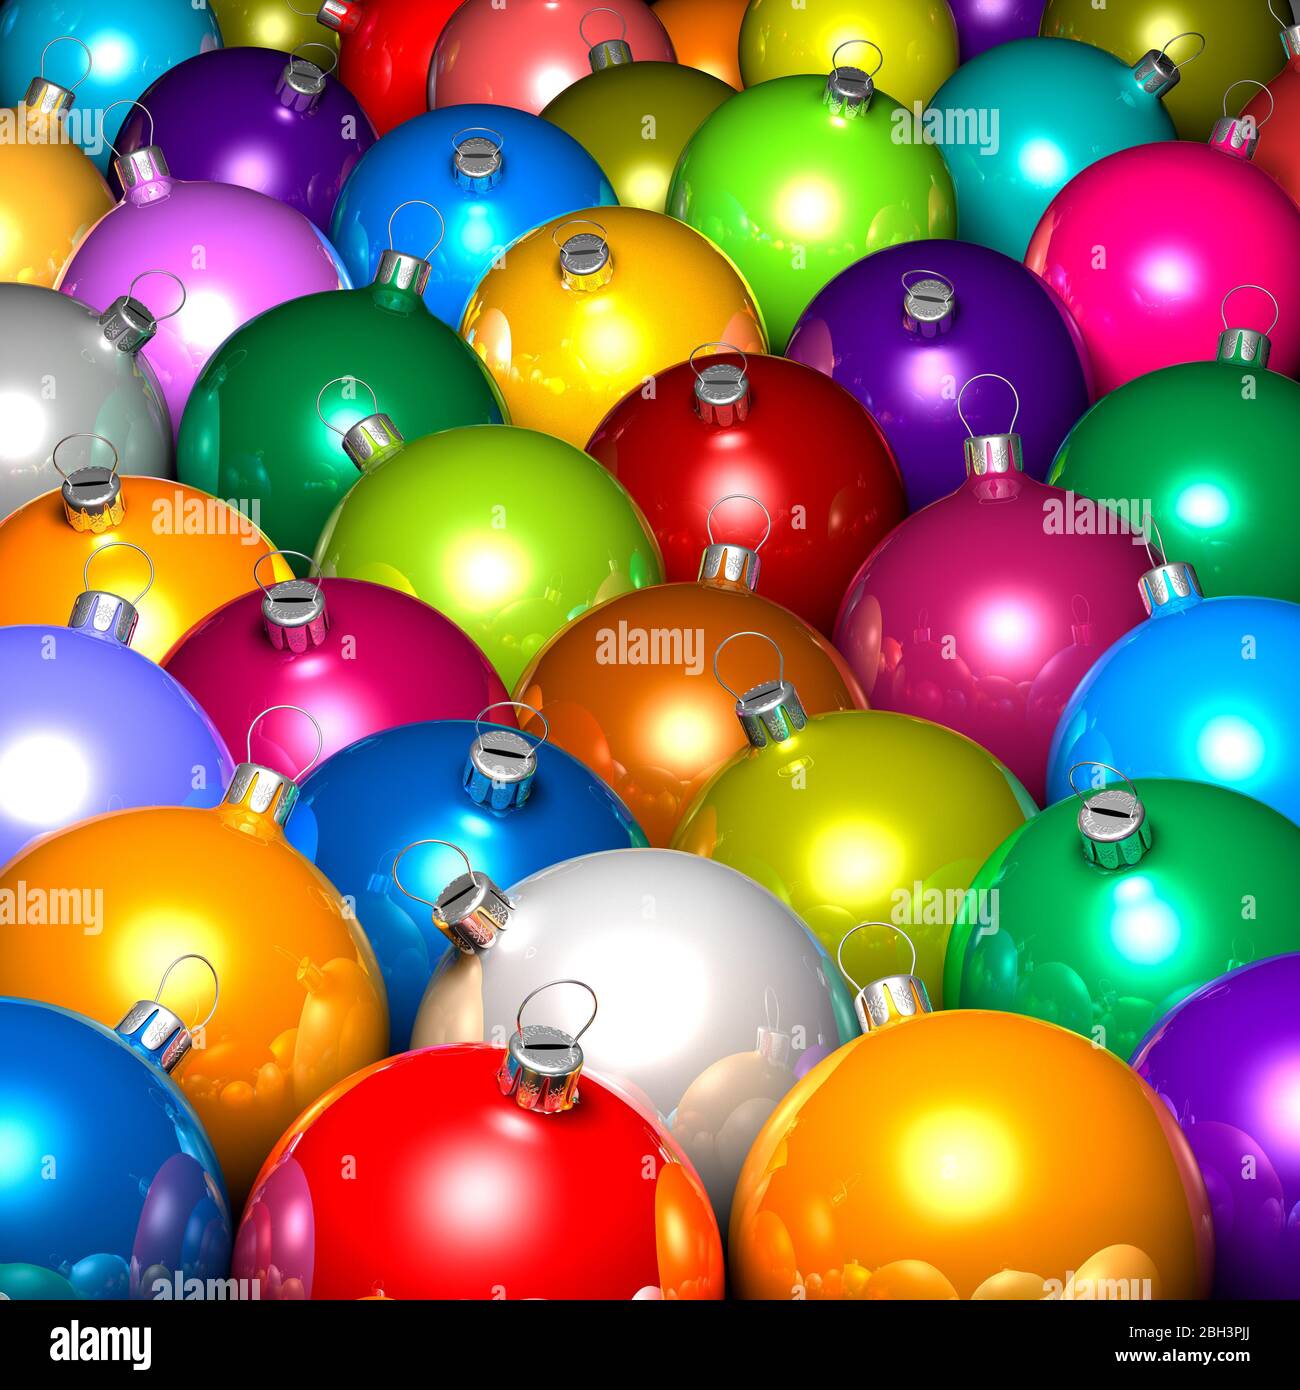 Boules de Noël, boules, décorations, ornements. Ornements de suspension multicolores. Point de vue élevé.gros plan, plein cadre. Traitement graphique Banque D'Images